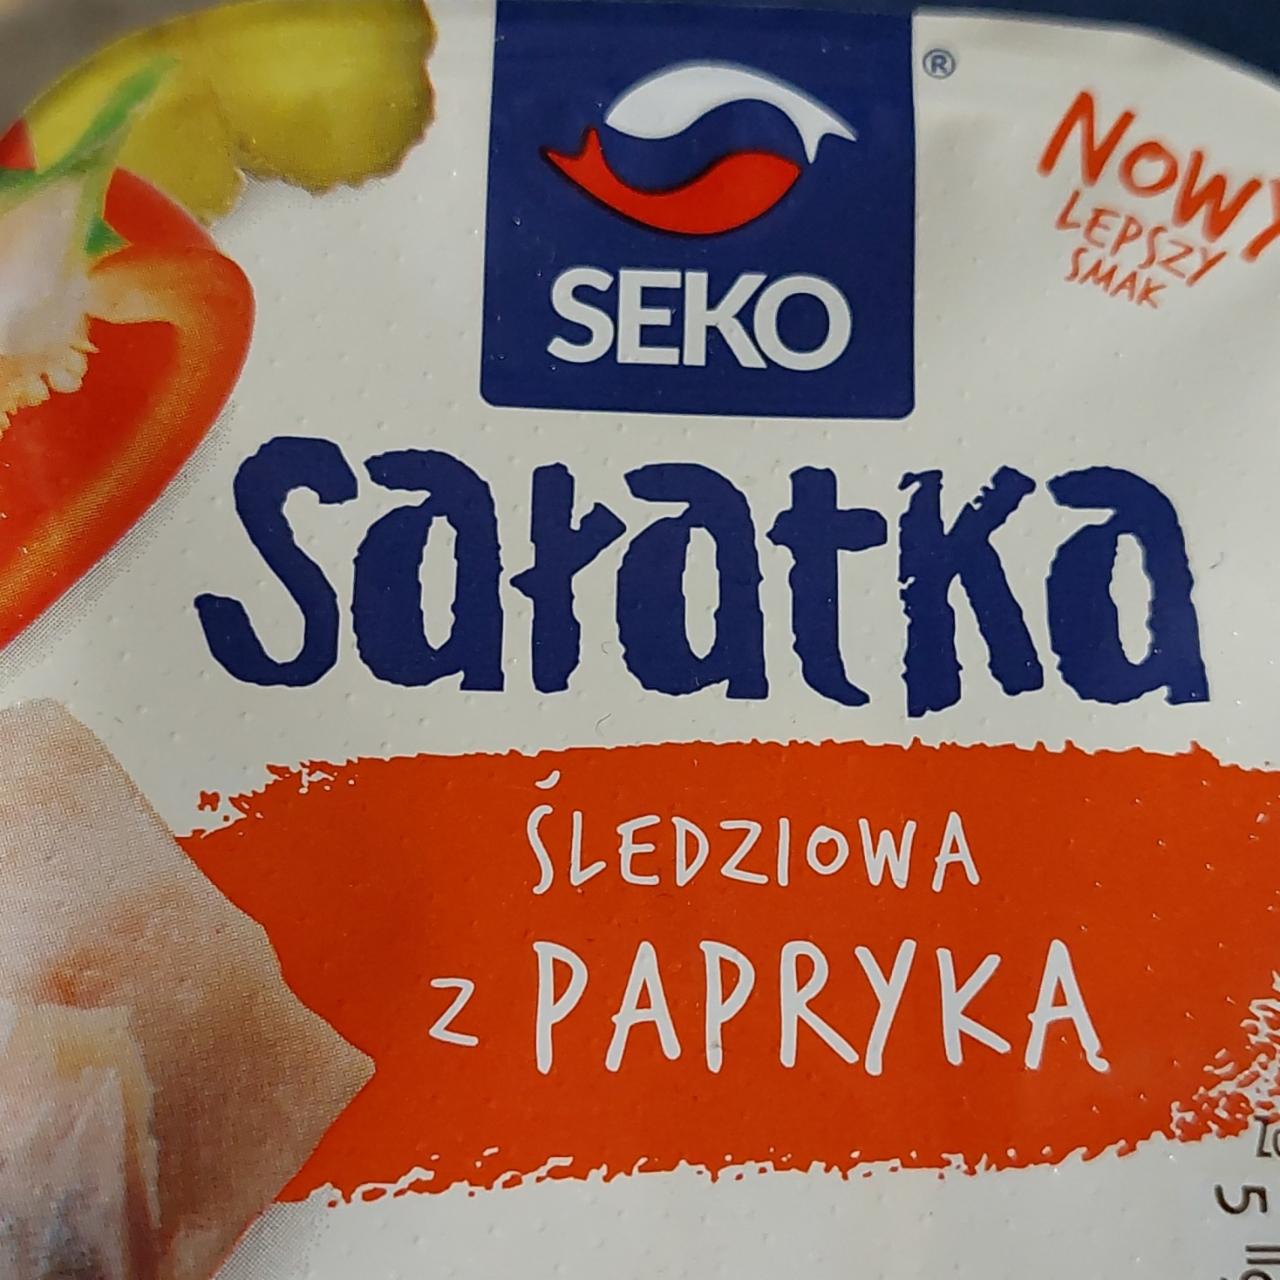 Zdjęcia - Salatka śledziowa z papryką Seko